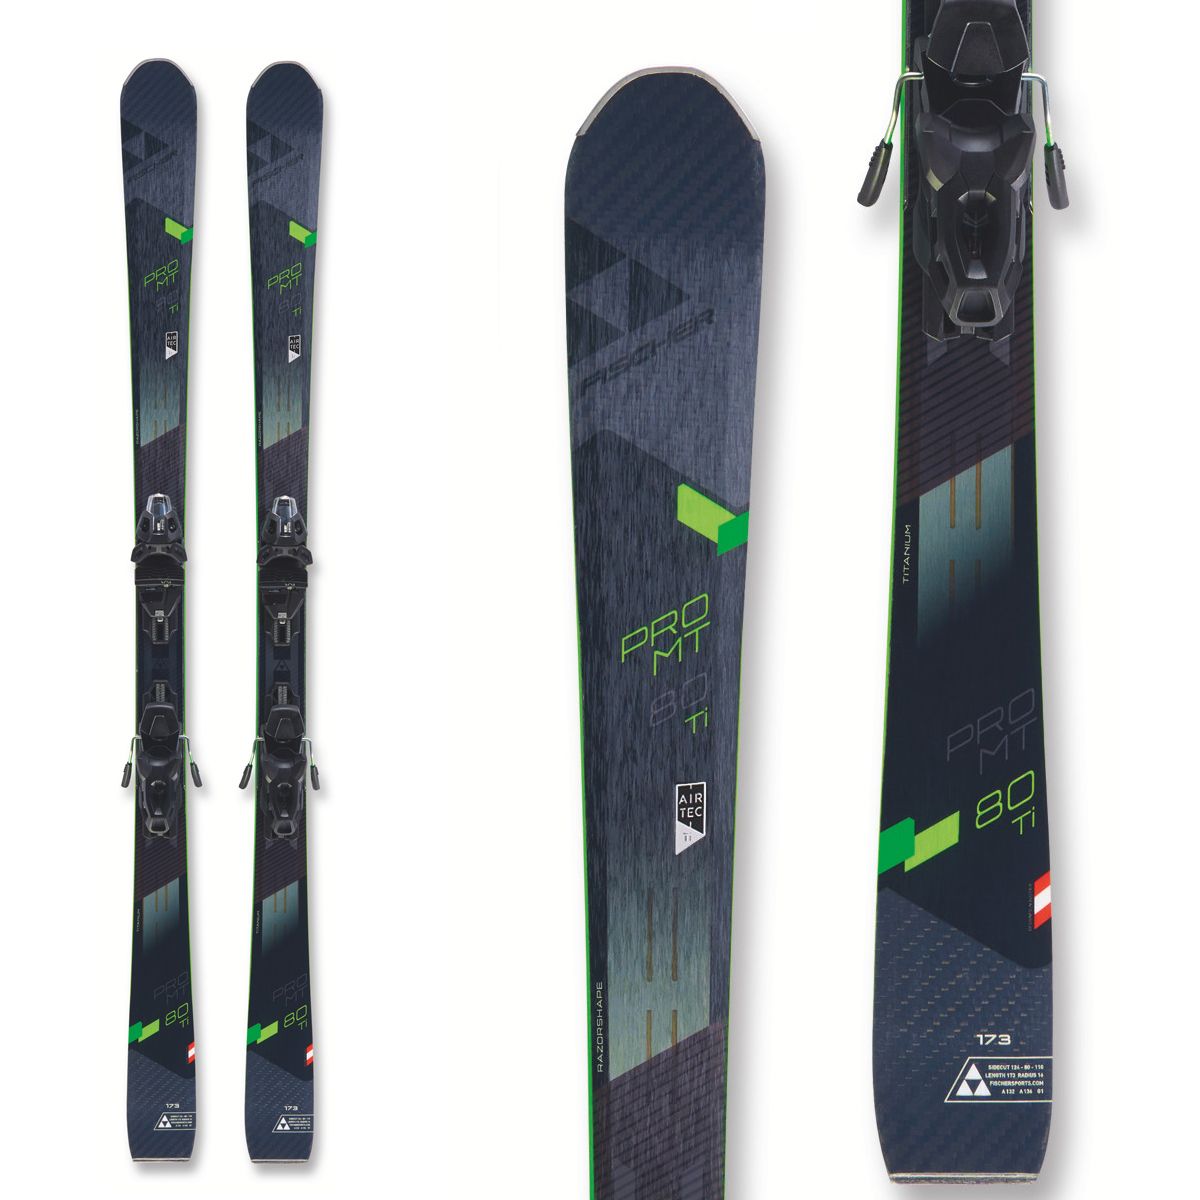 Pack ski Pro Mt 80 TI TPR + MBS 11 PR 